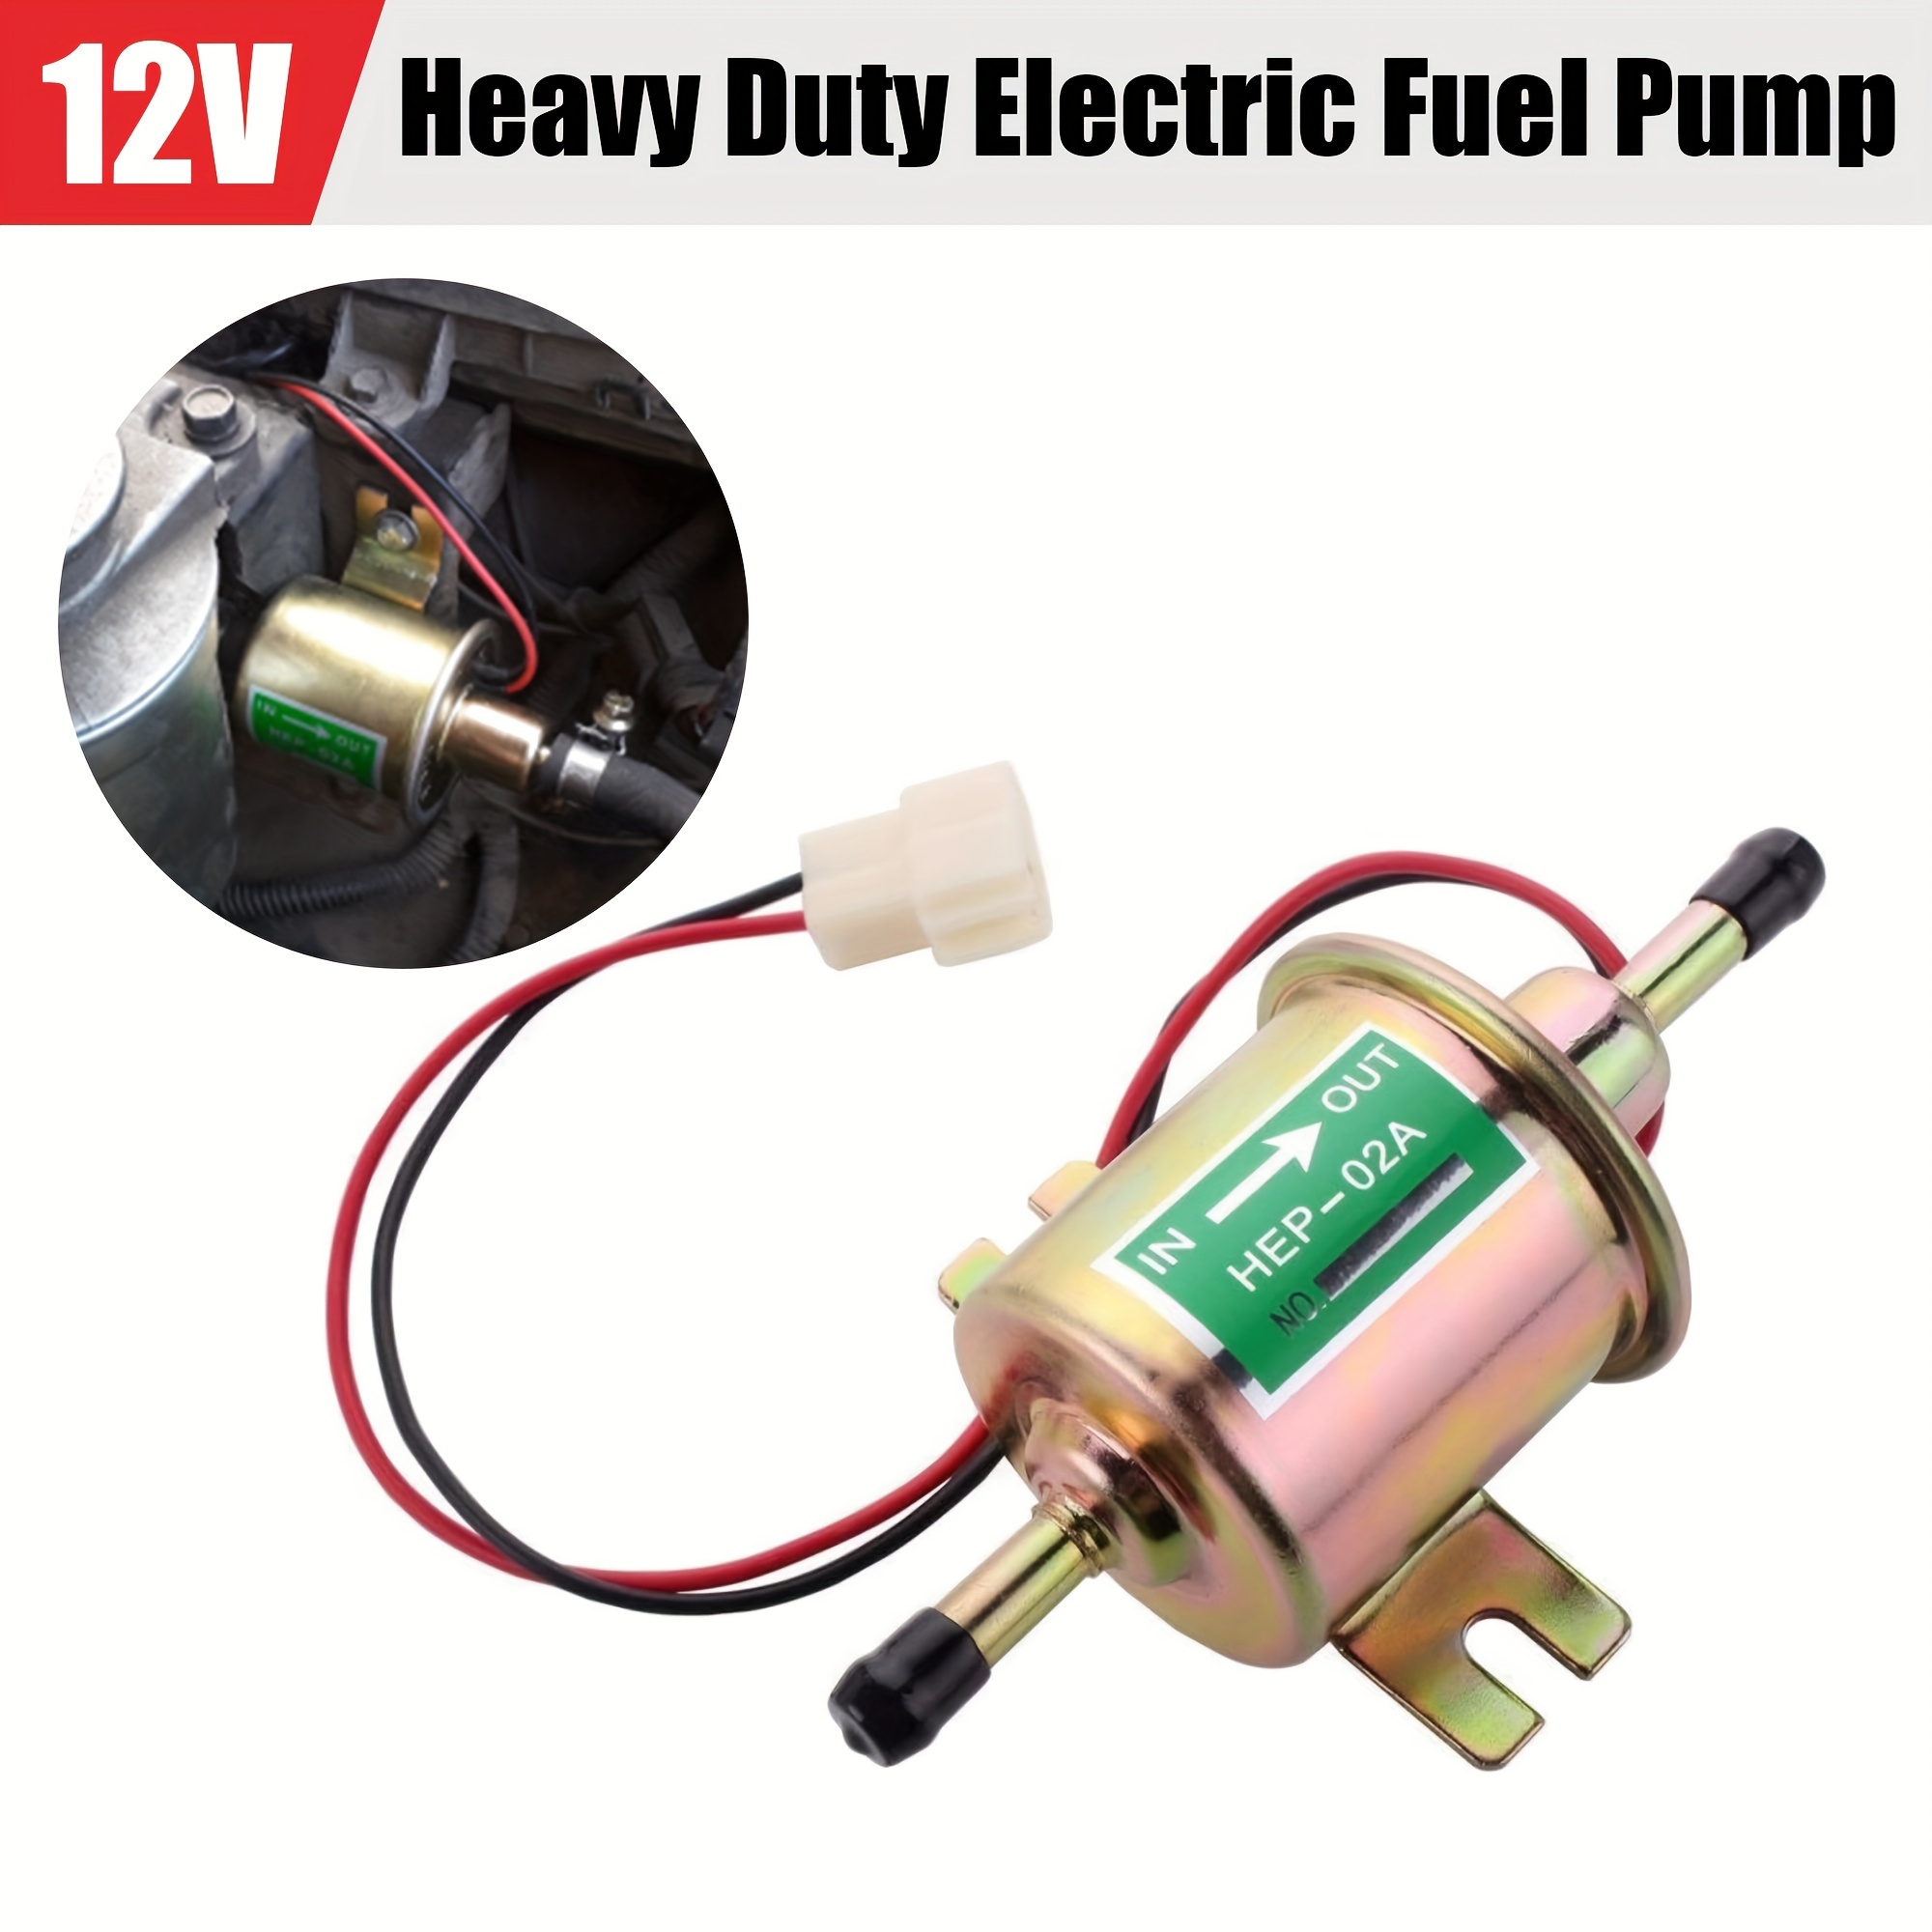  Pompe à carburant électrique pour chauffage diesel de voiture  12 V 22 ml - Compteur d'impulsion - Chauffage d'air en ligne - Kit de pompe  à carburant électrique pour Eberspacher